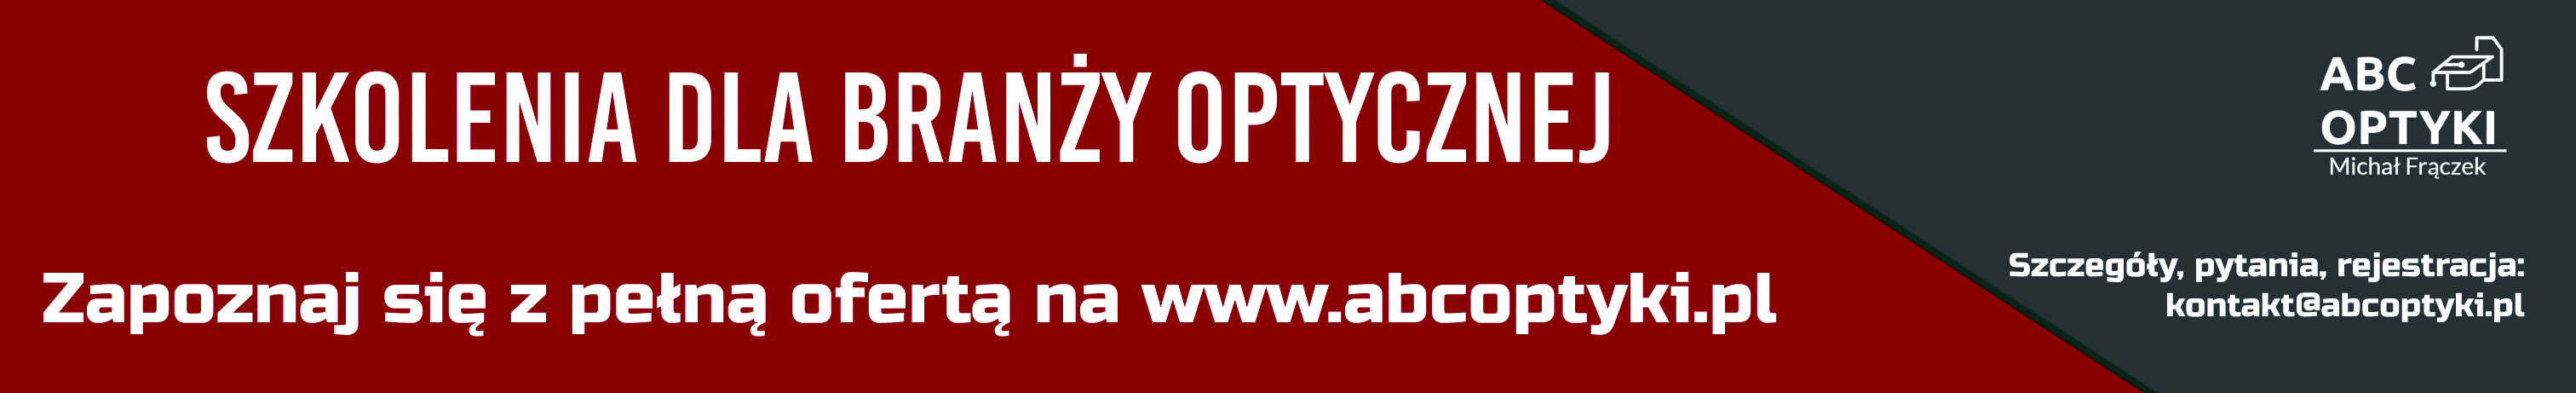 ABC Optyki